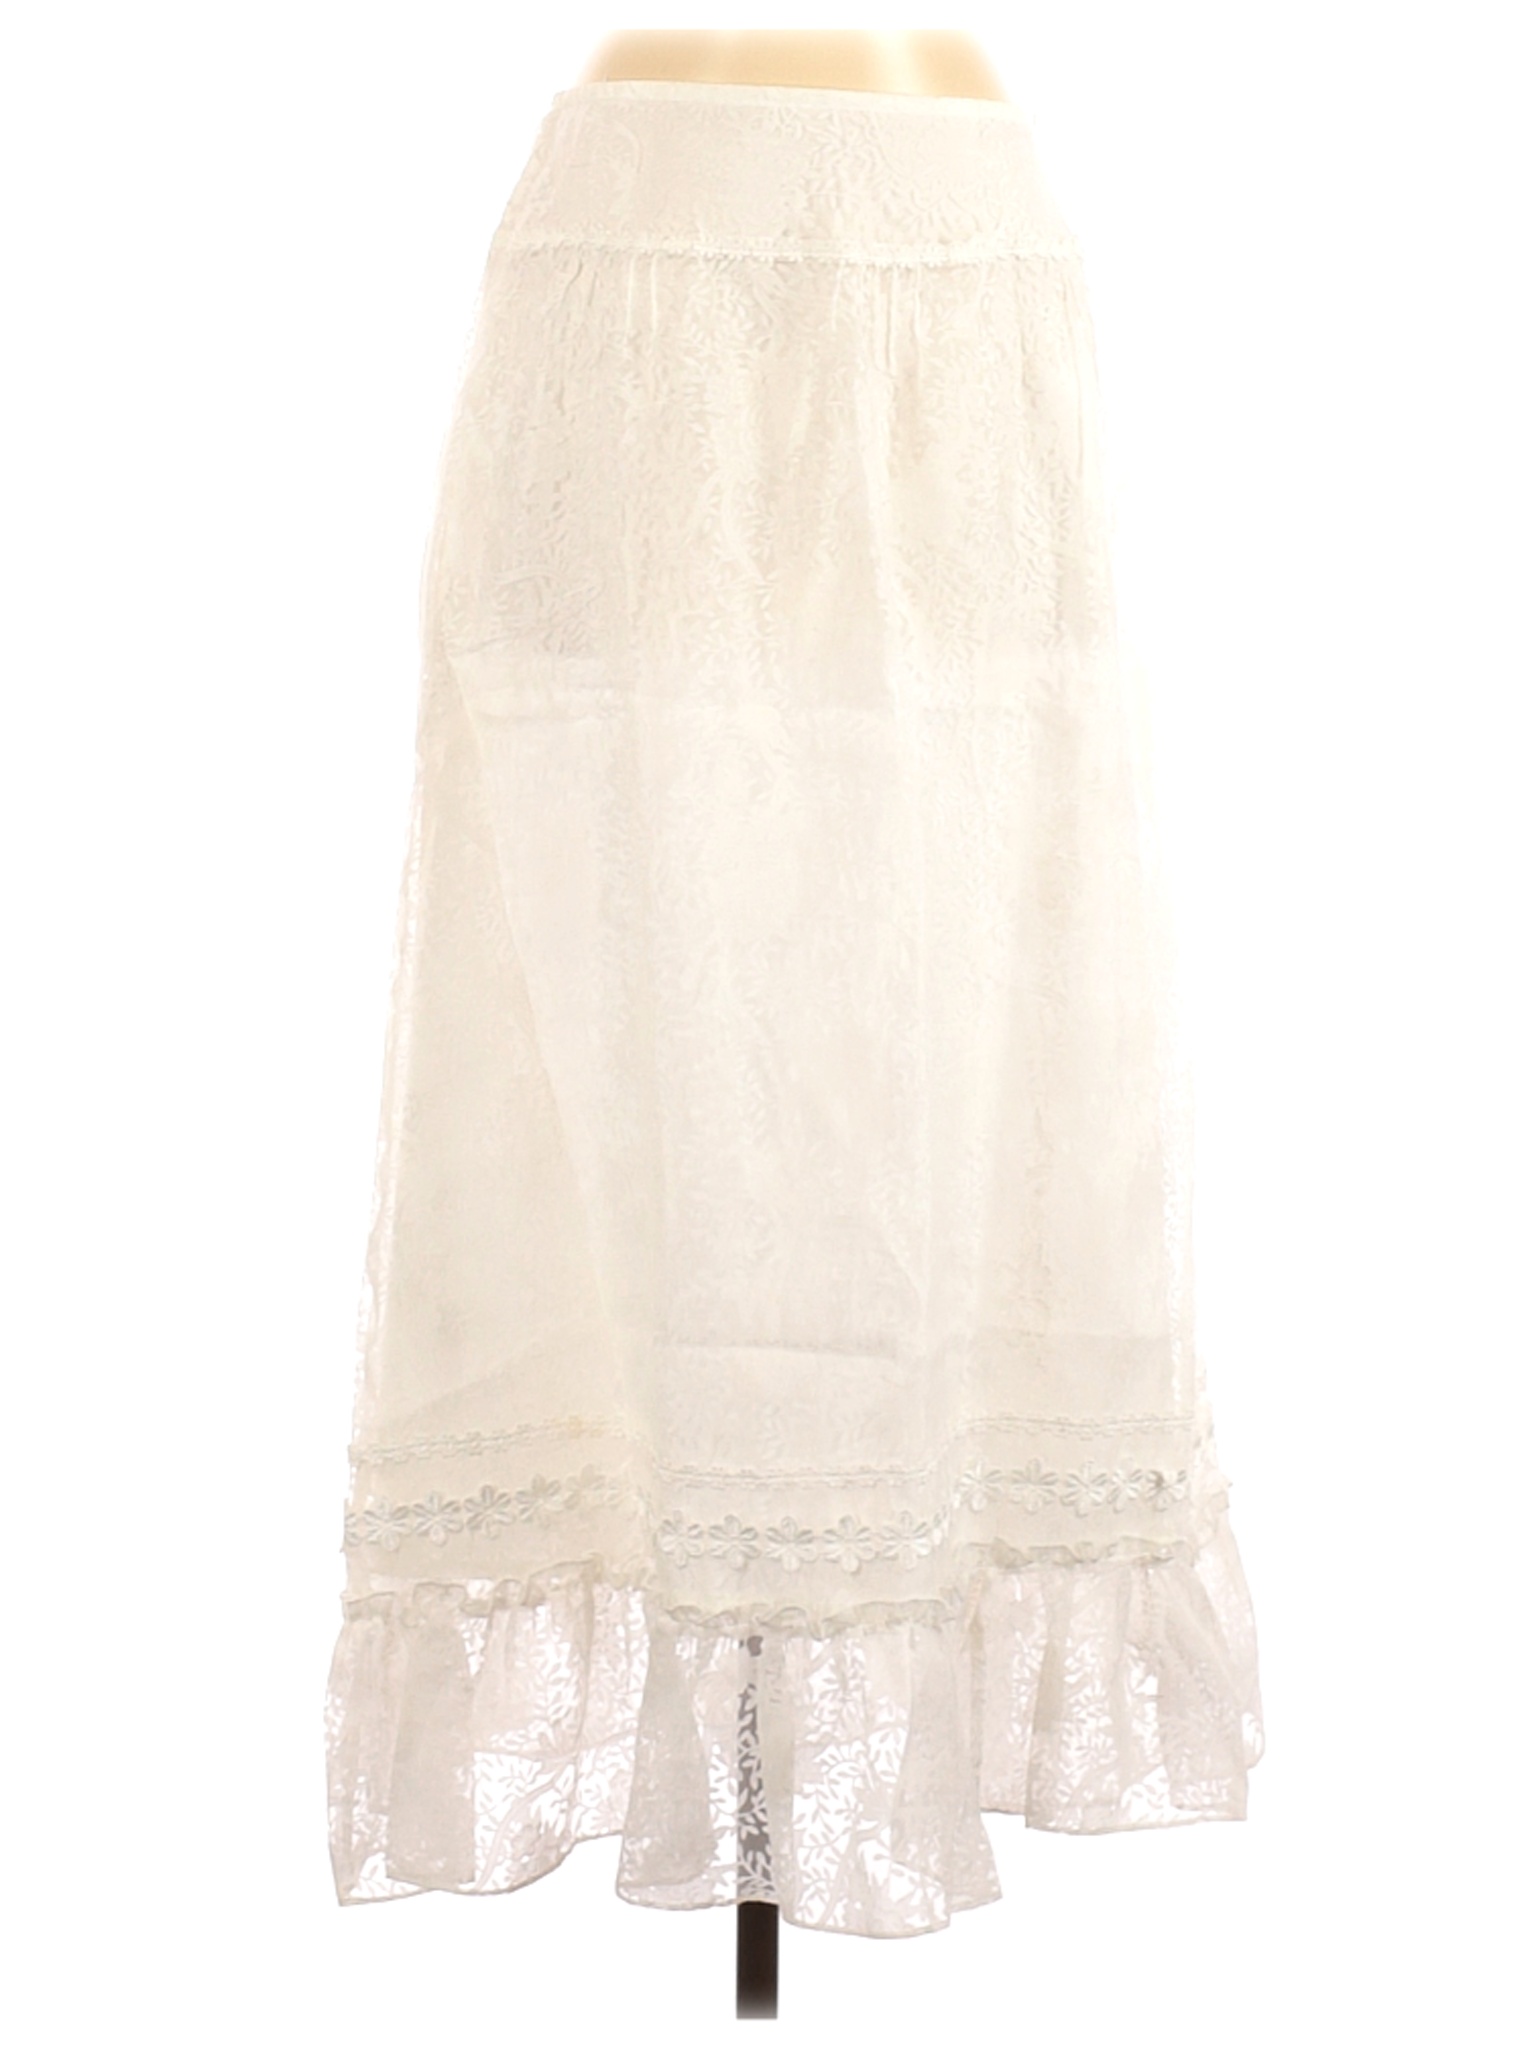 For Joseph Women Ivory Formal Skirt S | eBay